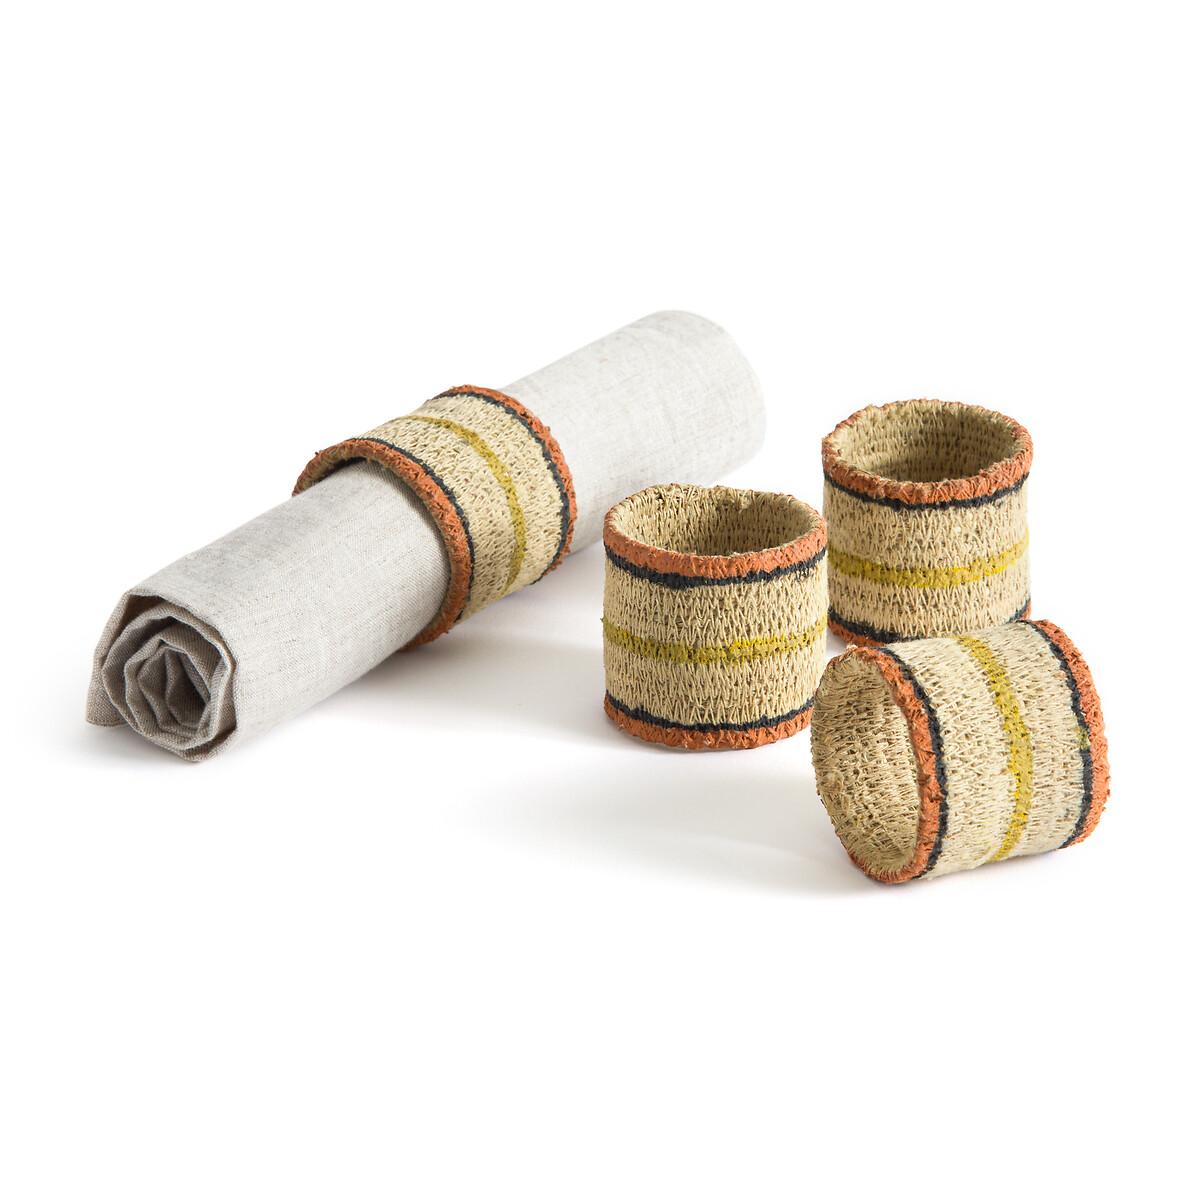 Комплект из четырех плетеных колец для полотенец Jutor единый размер разноцветный цесена плетеный стол